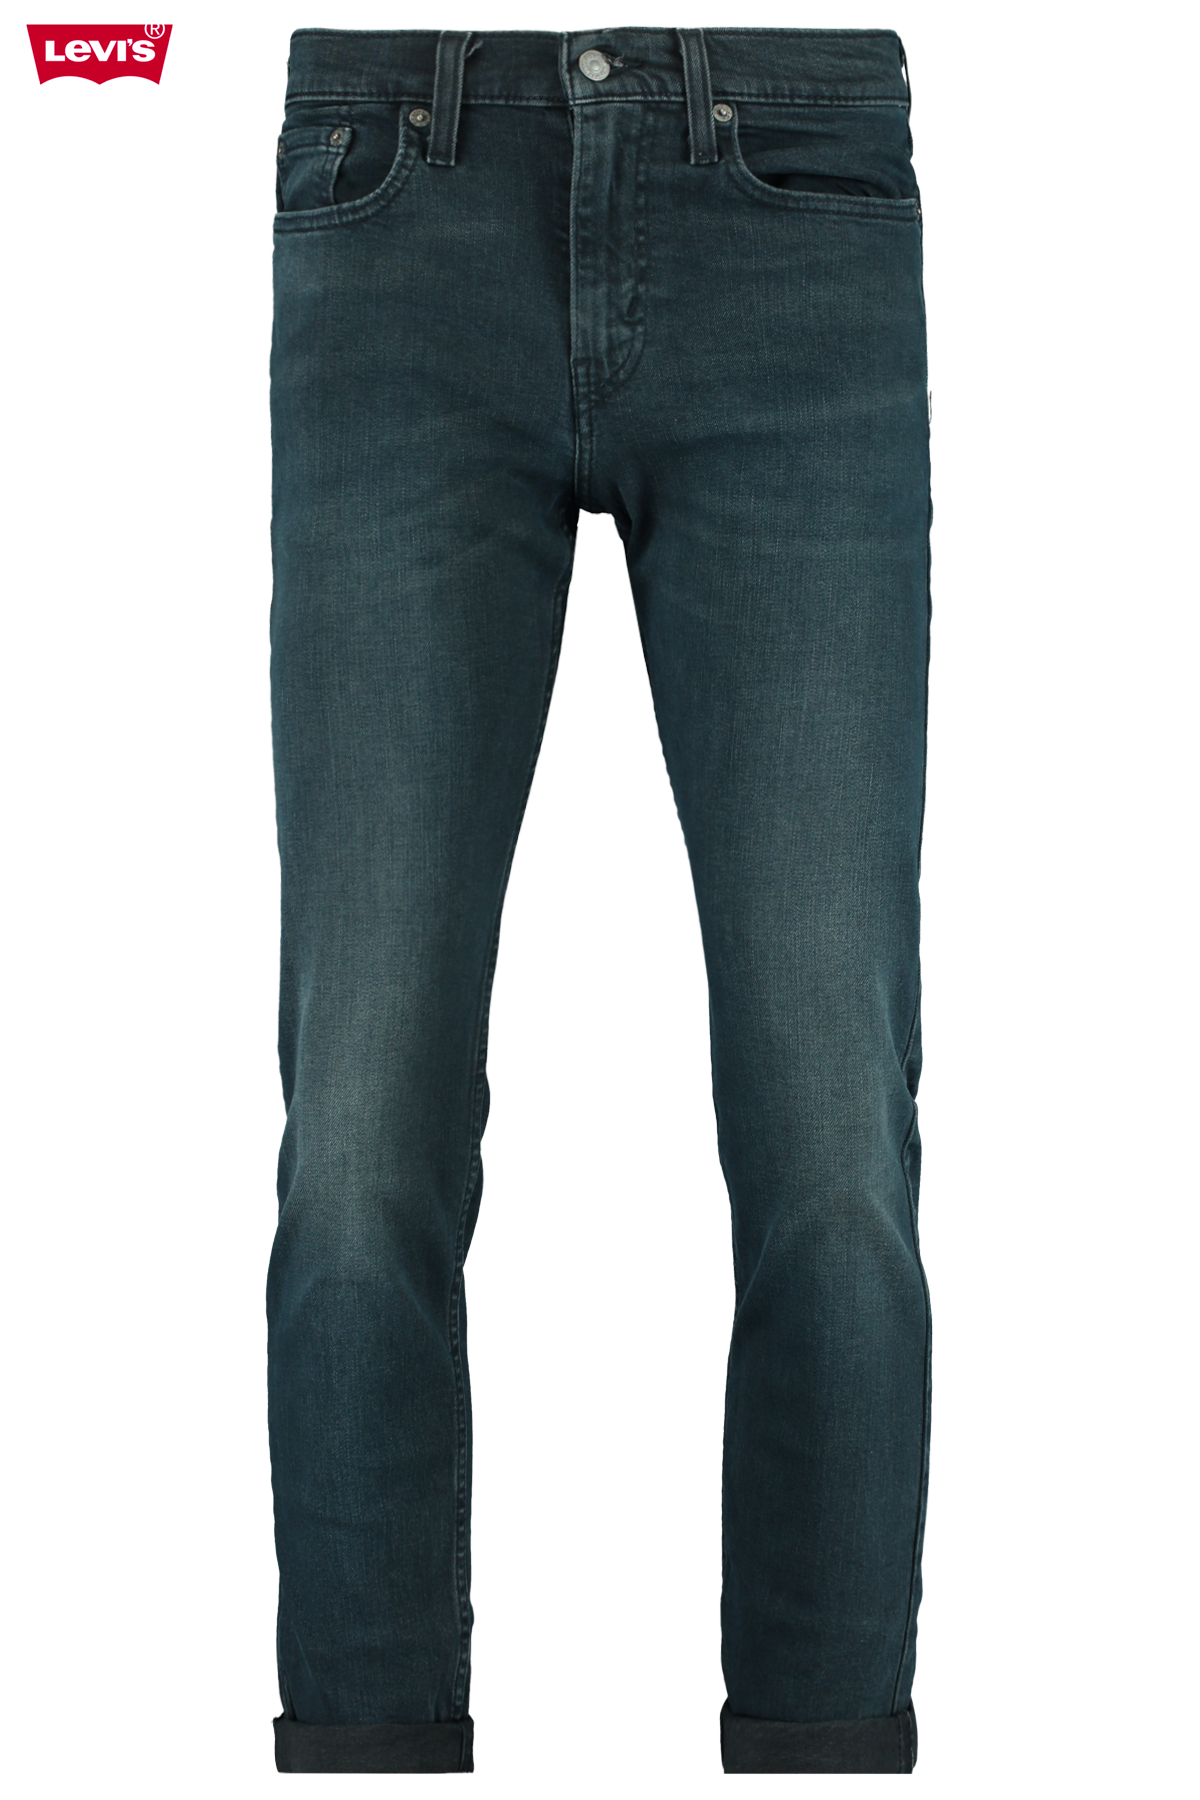 levi 502 black jeans